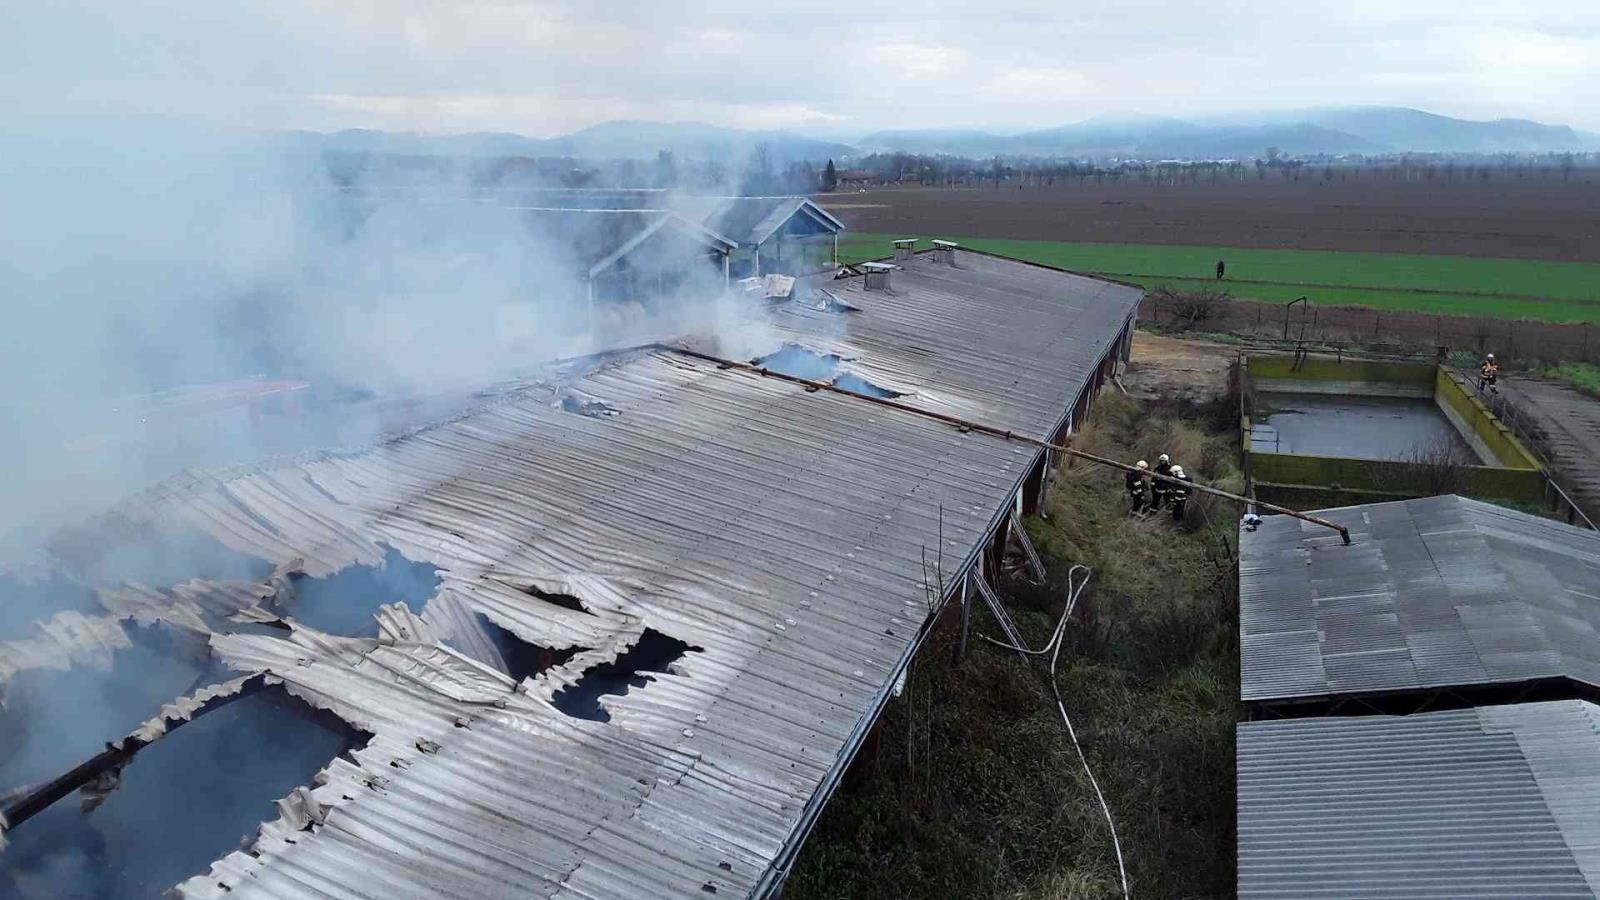 Šumpersko - likvidace požáru zemědělského objektu zdroj foto: HZS OLK